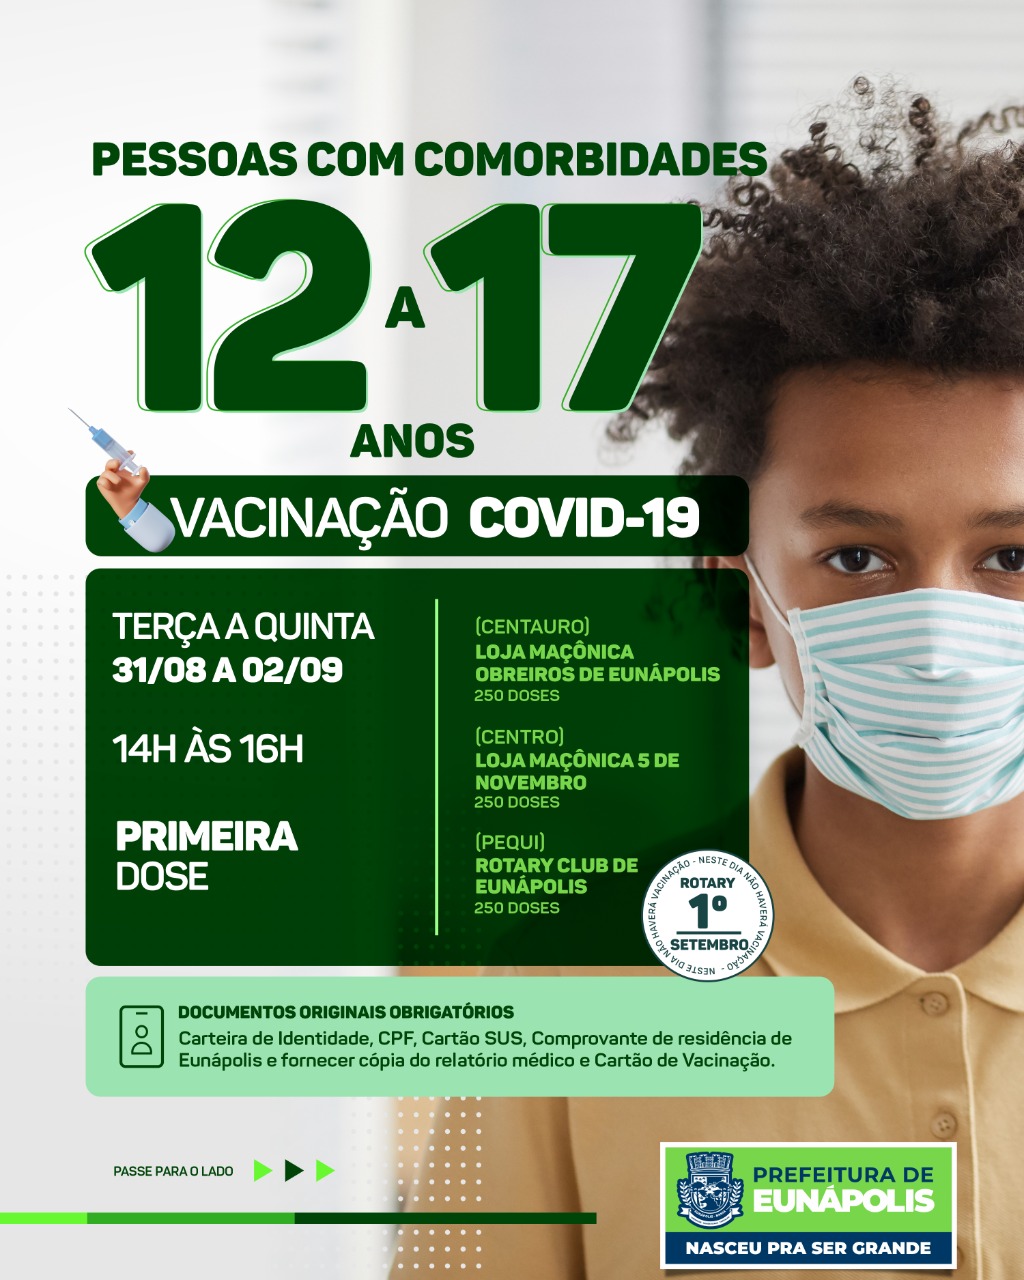 Eunápolis: Cronograma de Vacinação contra a Covid-19 (18 anos ou + - 1ª DOSE PARA ADOLESCENTES COM COMORBIDADES - 12 À 17 ANOS) 9